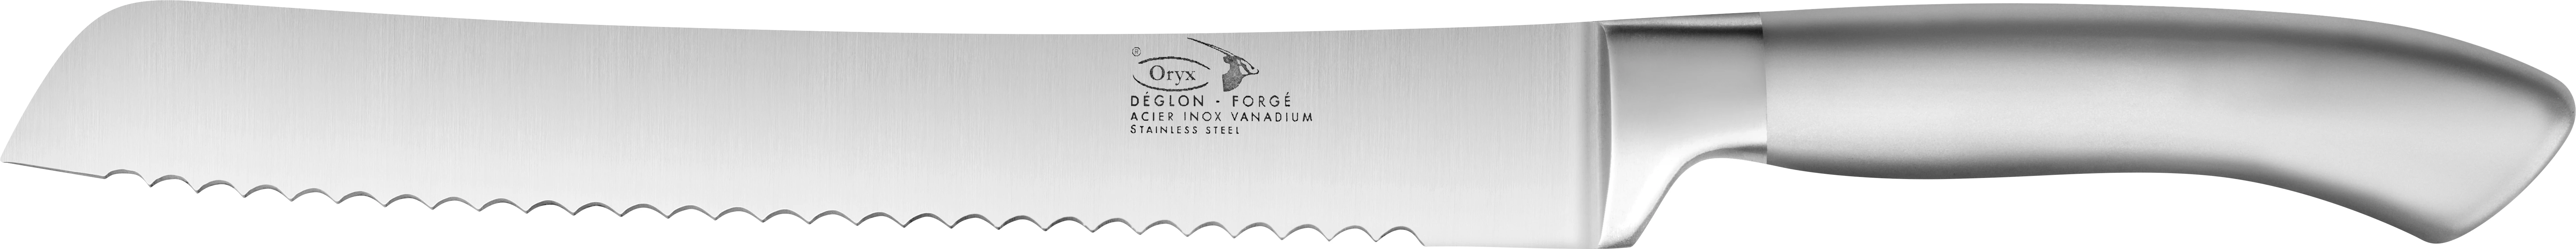 Deglon ORYX brødkniv, rustfrit stål, 20 cm